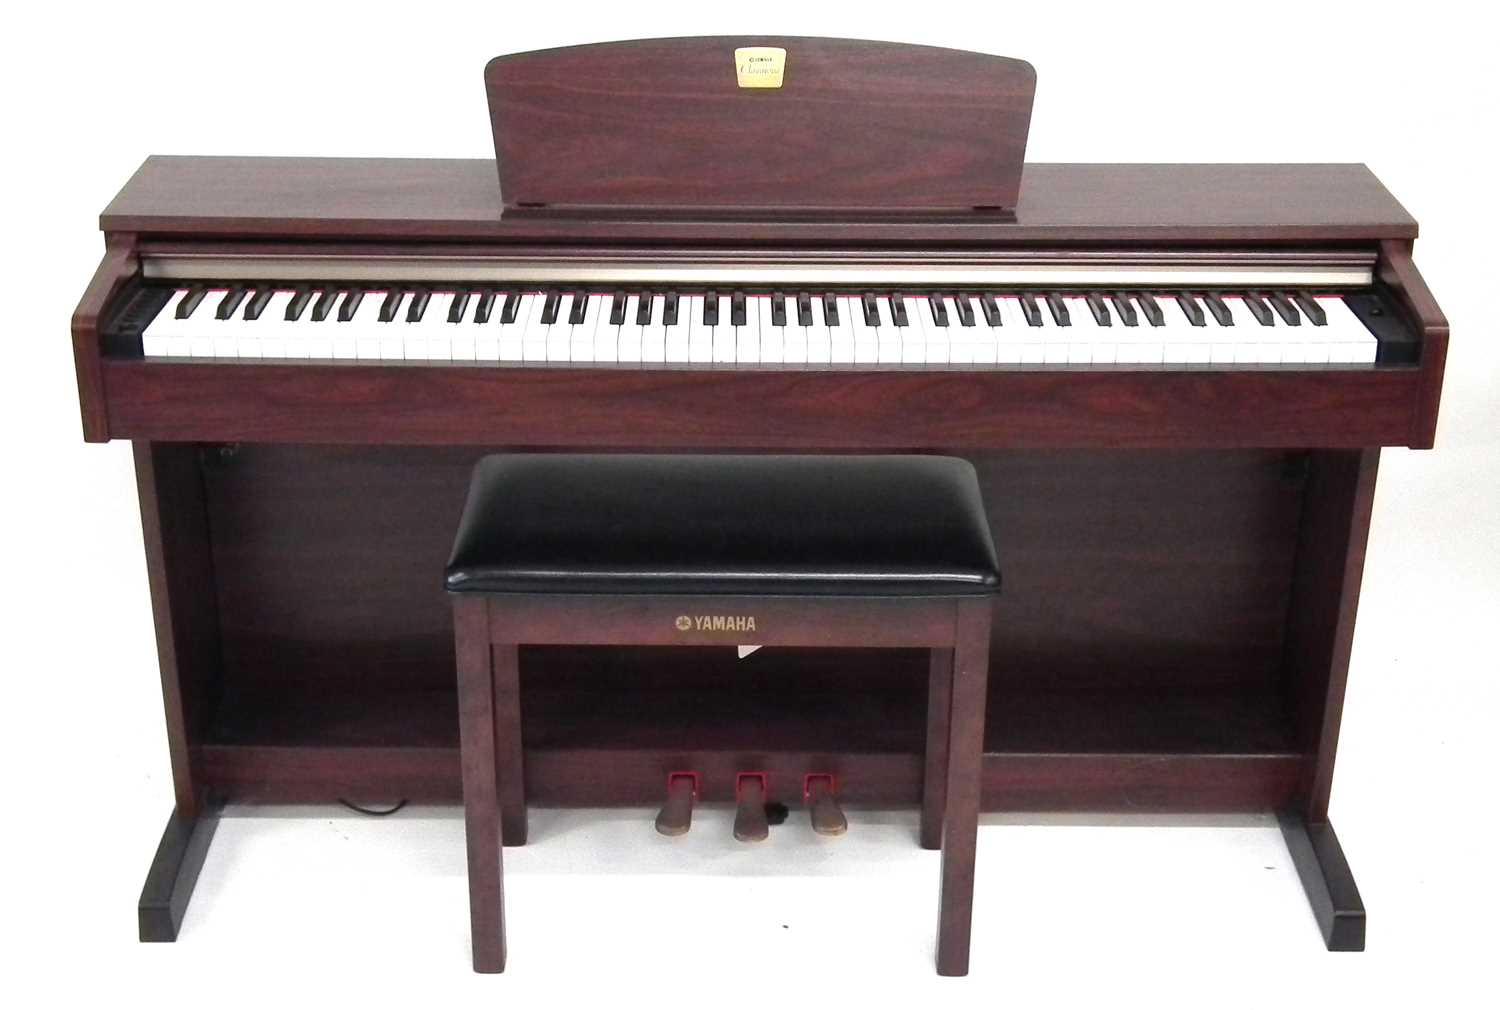 Lot 23 - Yamaha Clavinova electric piano, with stool and Sanyo headphones.